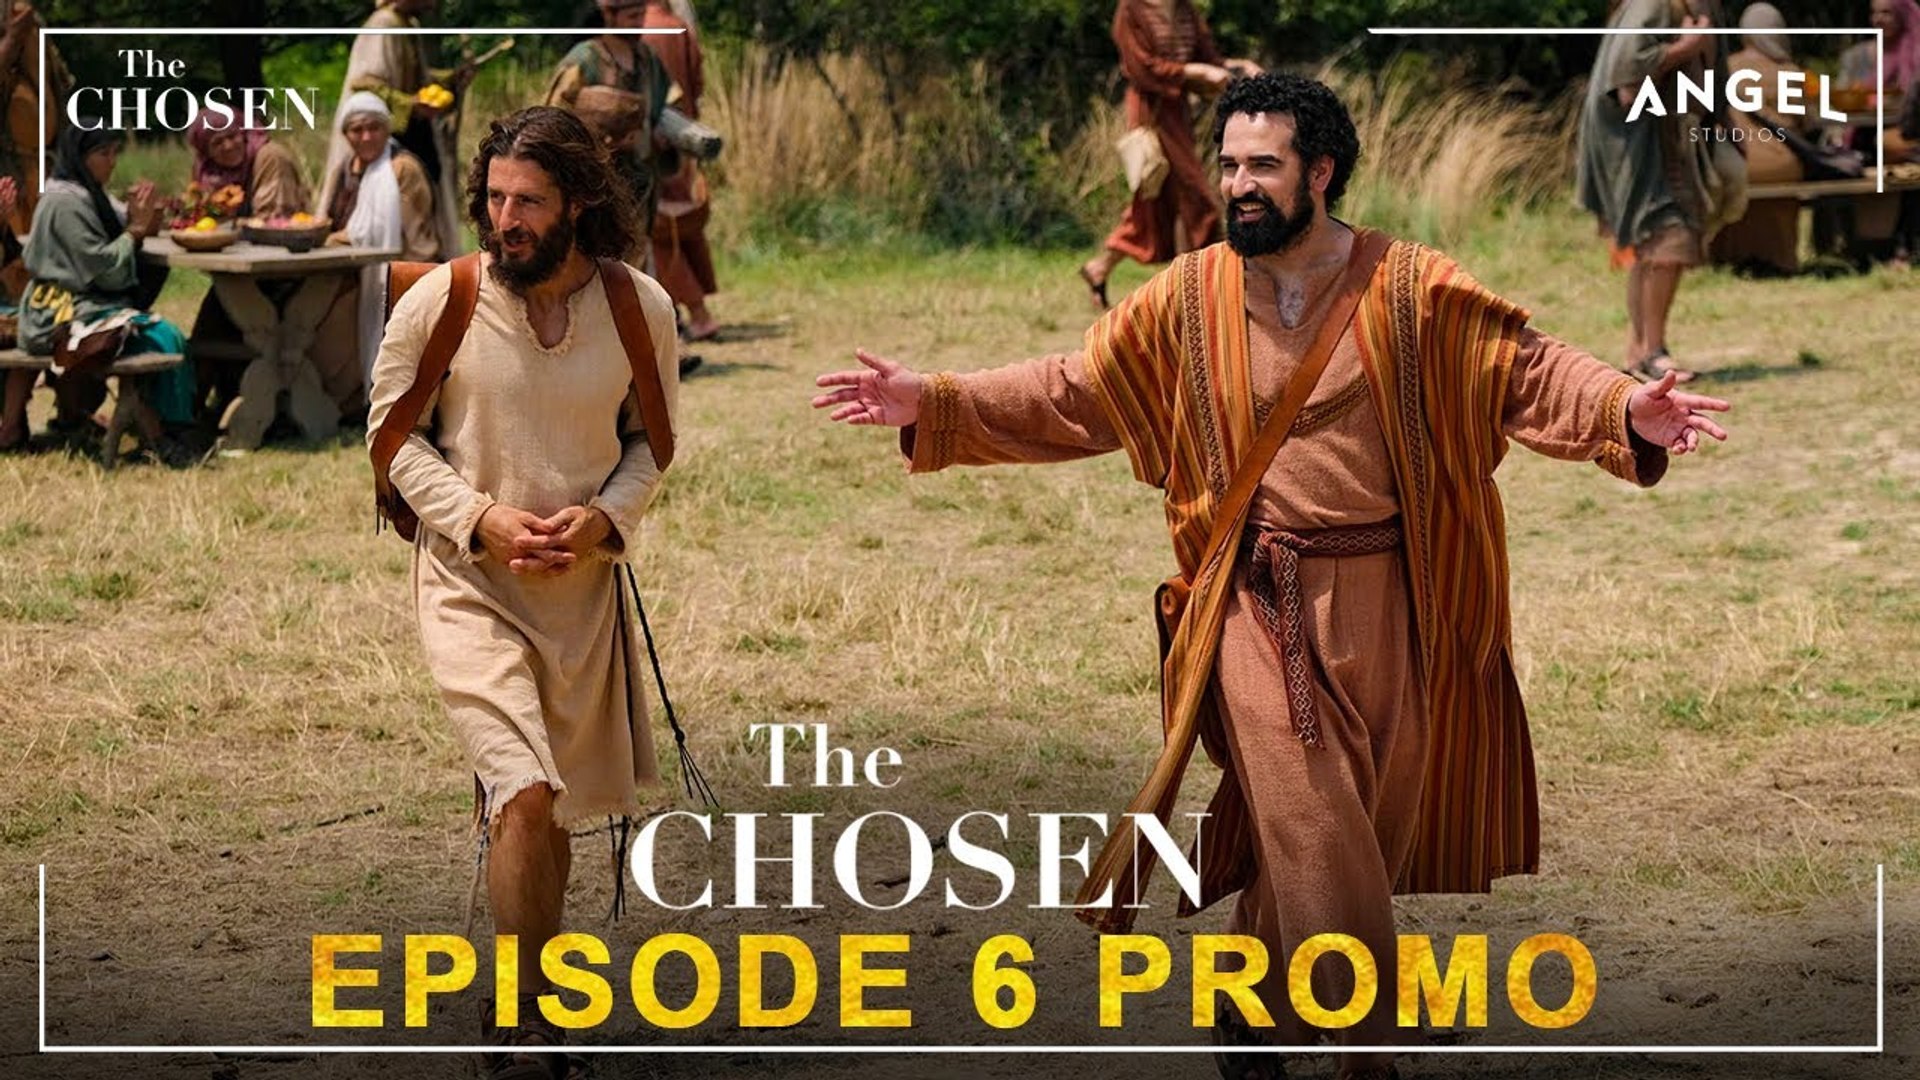 The Chosen Season 4 Trailer  Angel Studio, Release Date, Jesus